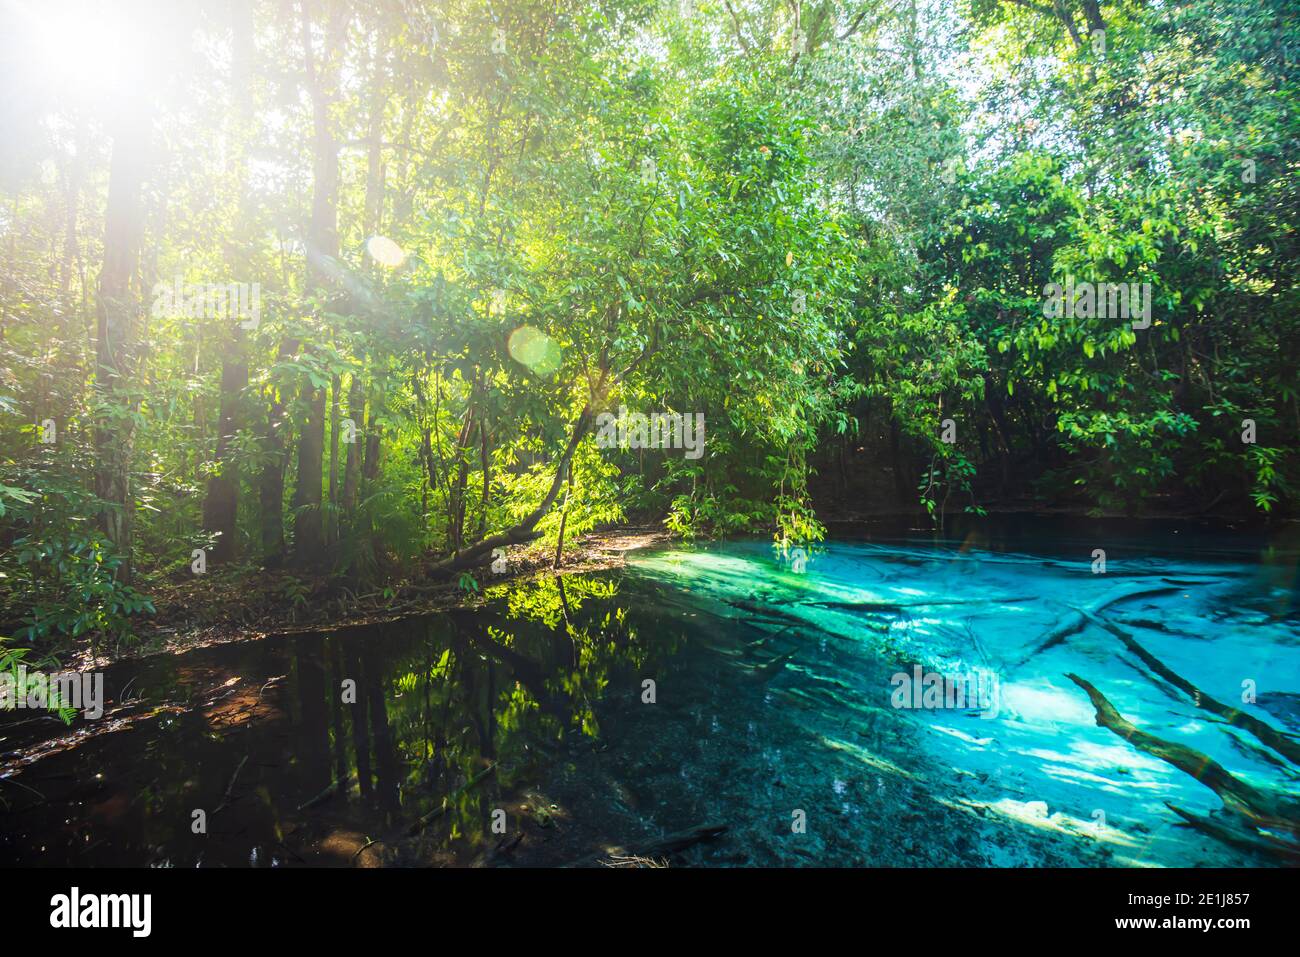 Piscina mágica esmeralda en el bosque de tierras bajas en la mañana de verano, el amanecer brilla a través de árboles salvajes en la superficie de agua dulce turquesa. Krabi, Tailandia. Foto de stock